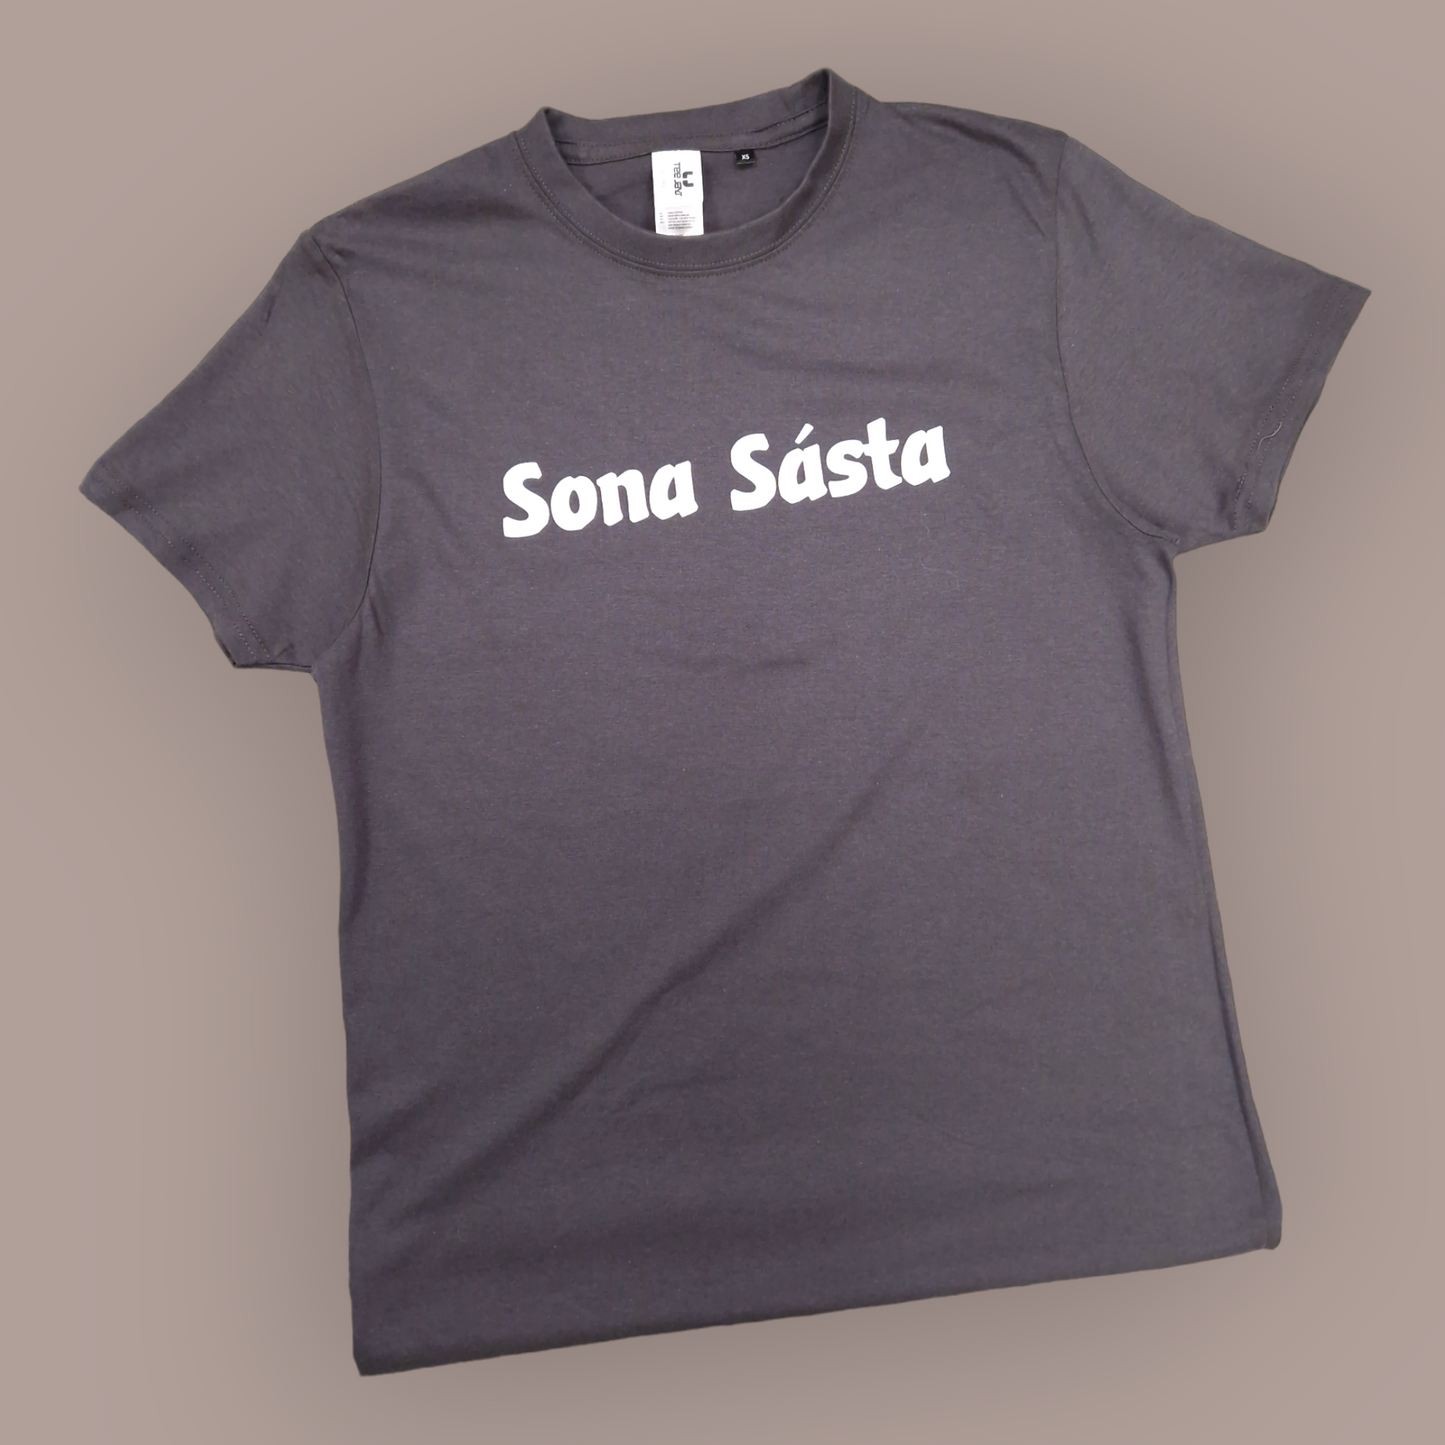 T-Shirt - Adult XXL - Sona Sásta - Charcoal Grey